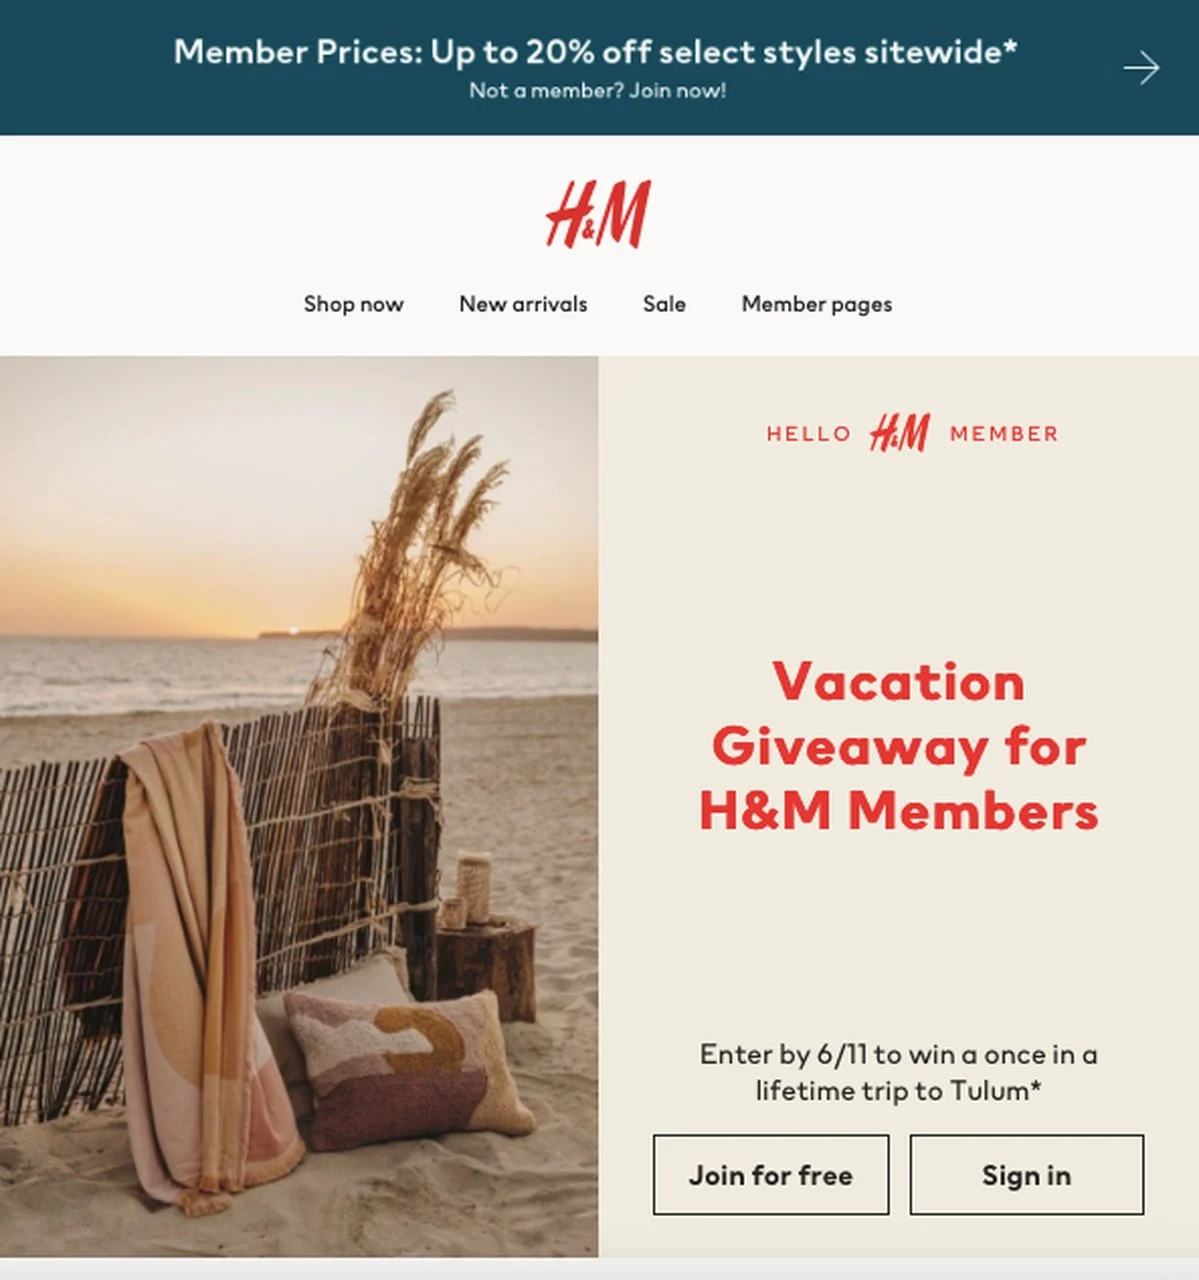 H&M 회원 전용 경품 이메일